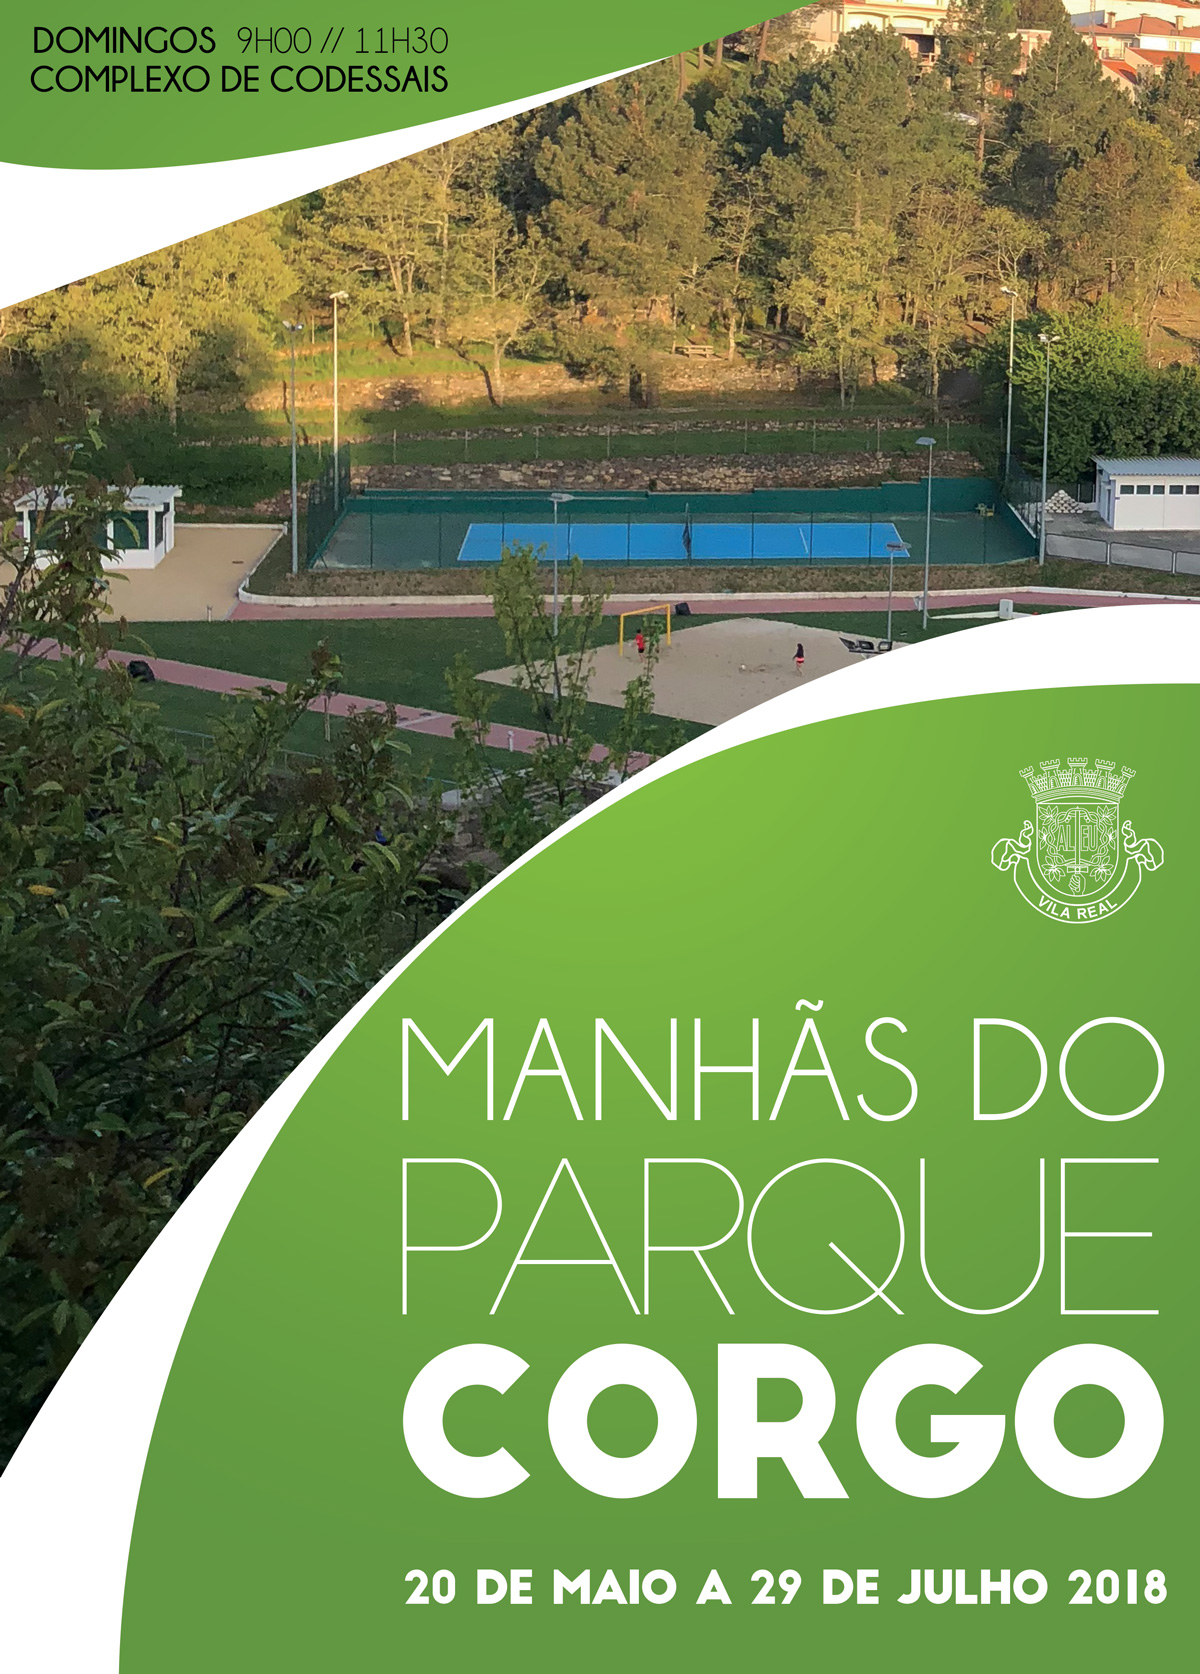 MANHÃS NO PARQUE CORGO A PARTIR DO DIA 20 DE MAIO